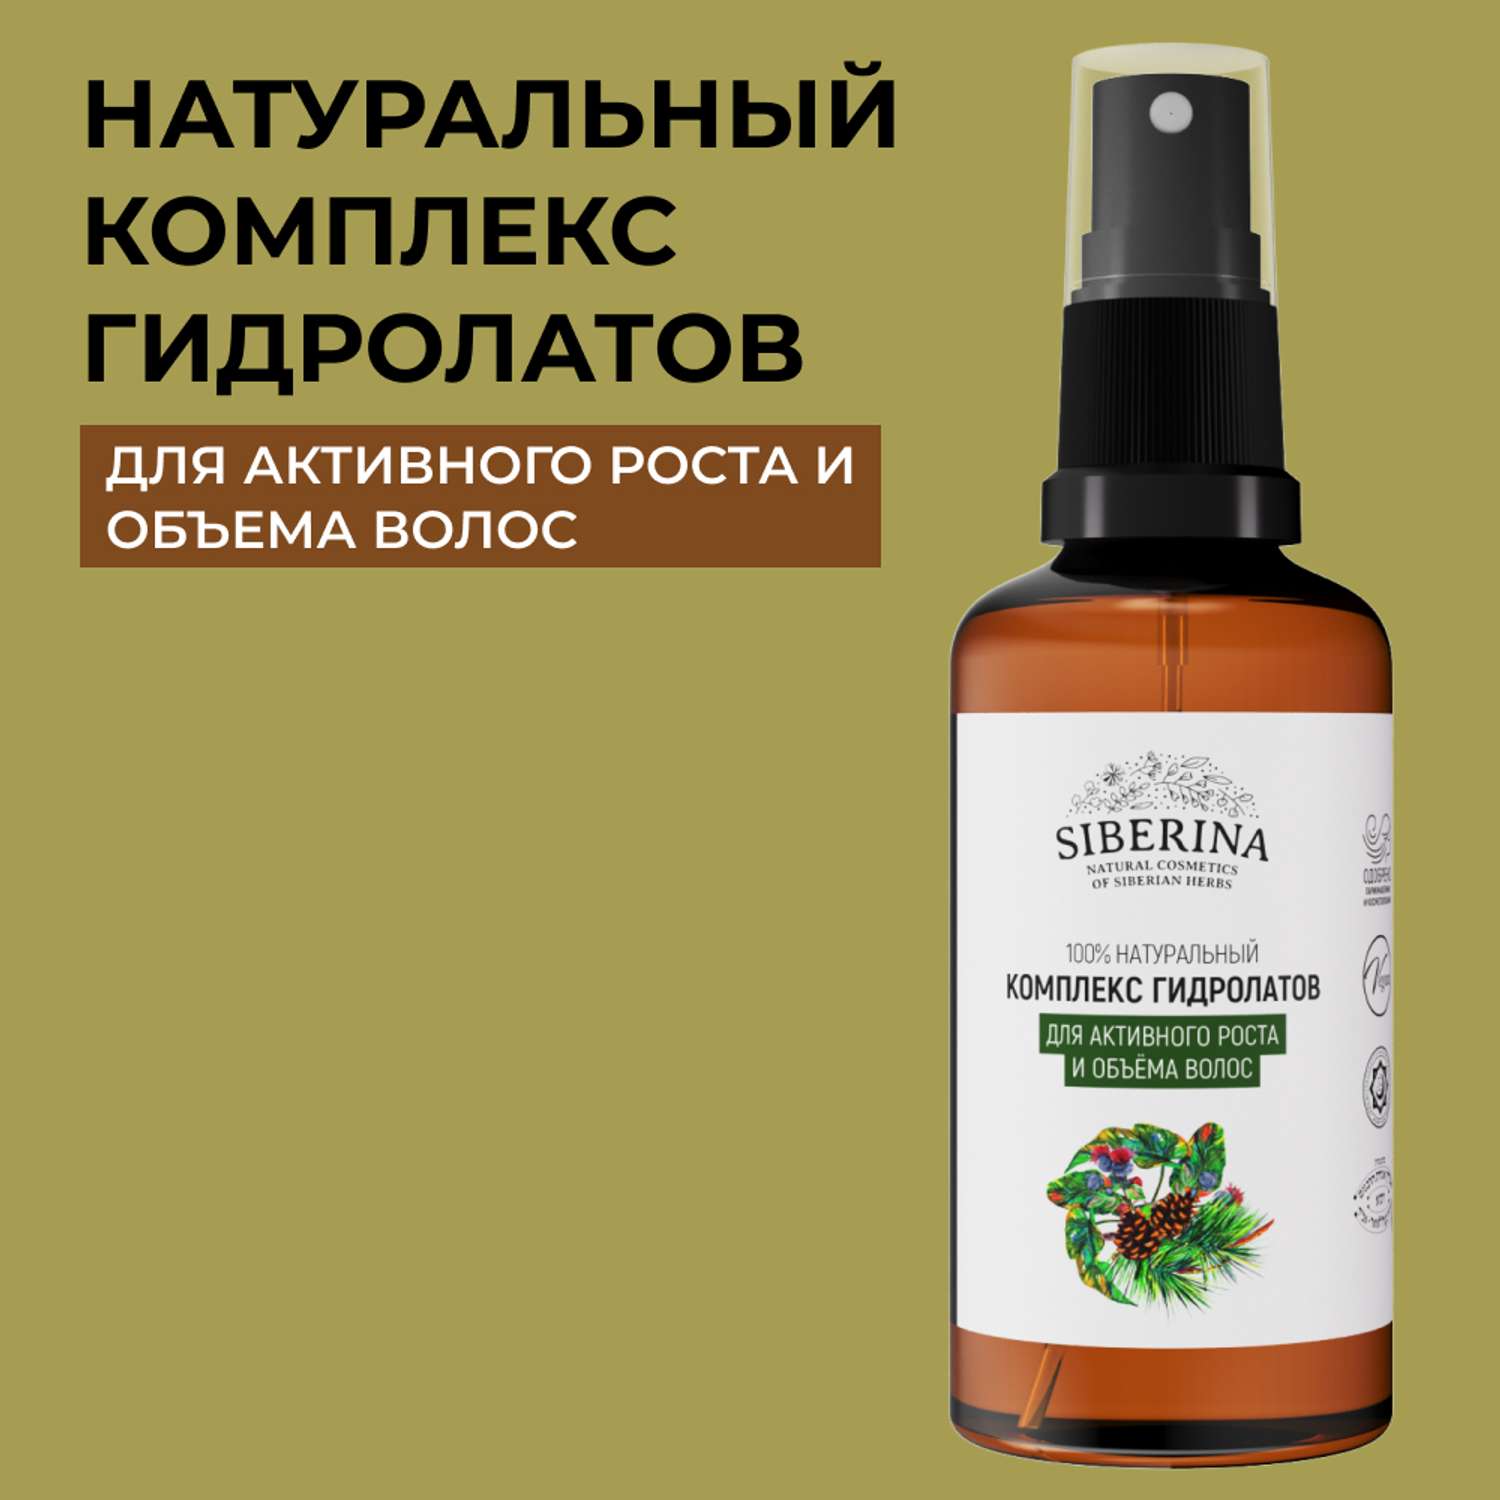 Комплекс гидролатов Siberina натуральный «Для активного роста и объема волос» 50 мл - фото 1